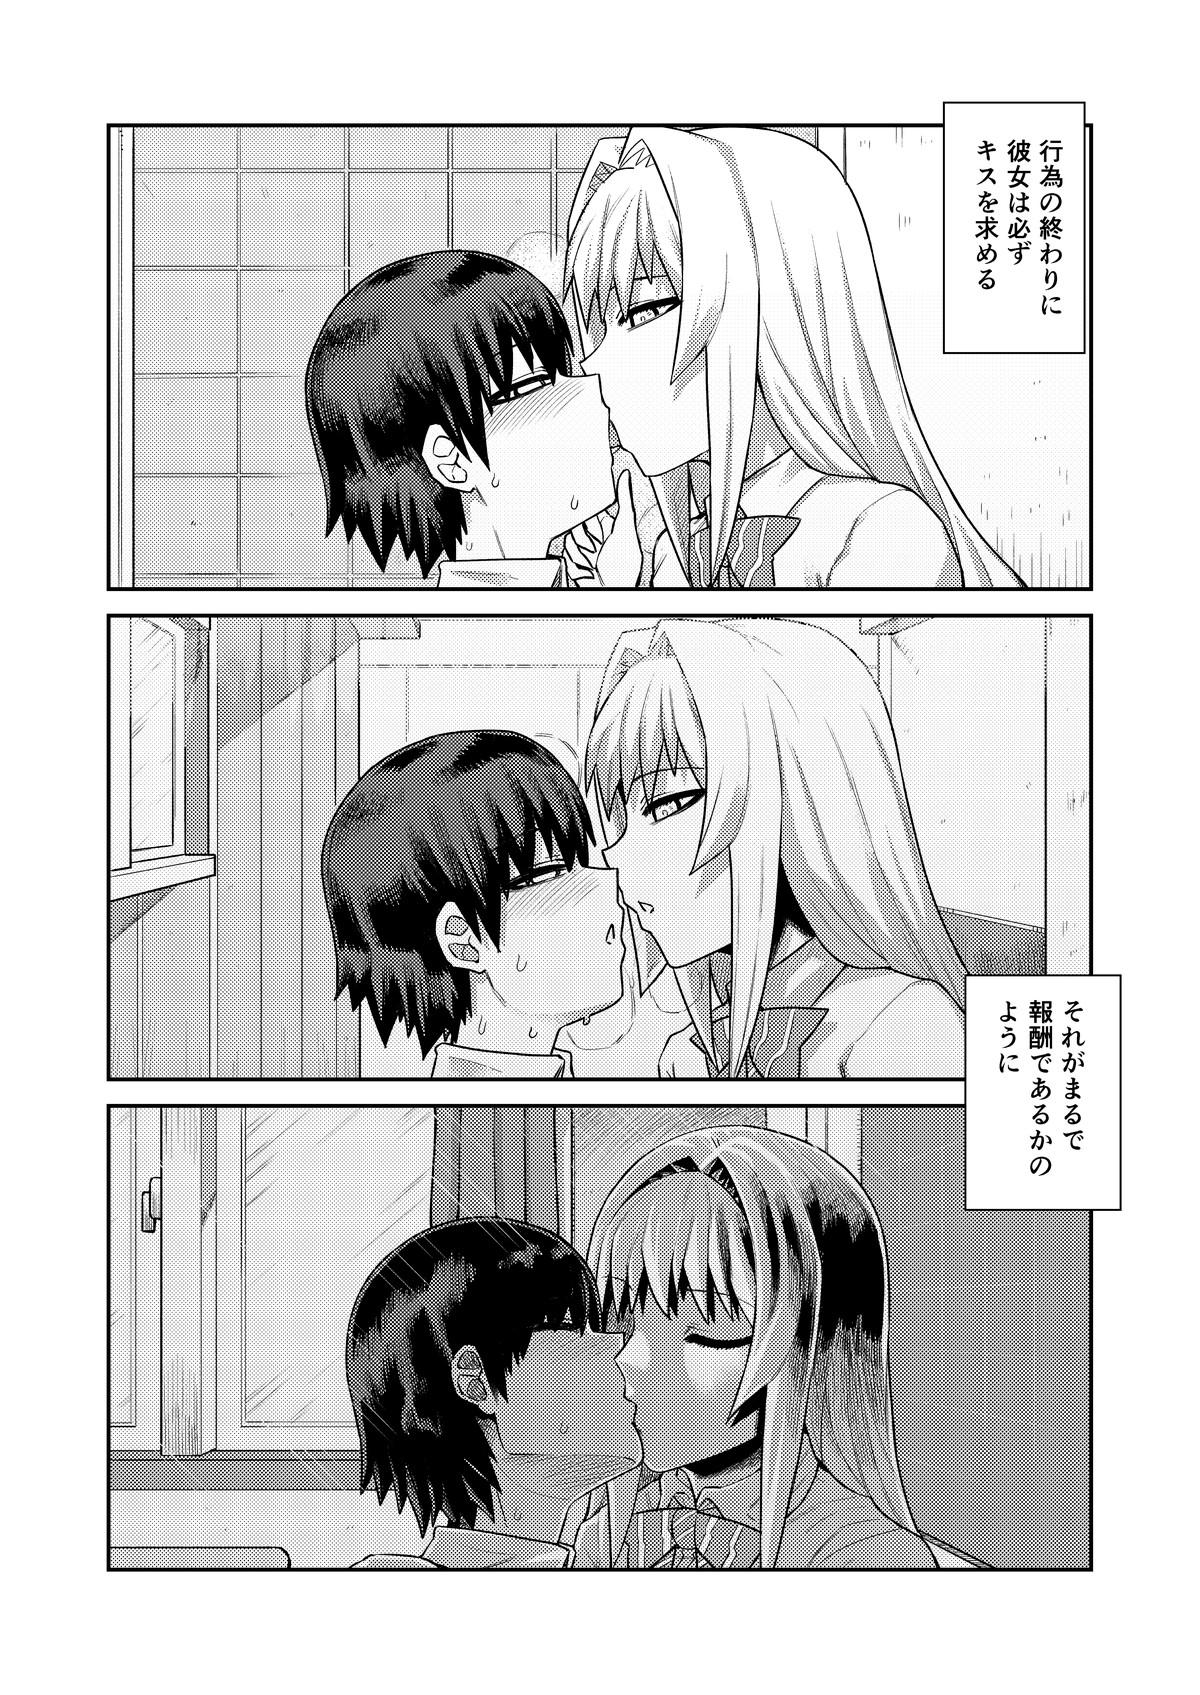 Hot Blow Jobs Riyū wa fumeidaga etchi shite kureru kōhai - Original Str8 - Page 9